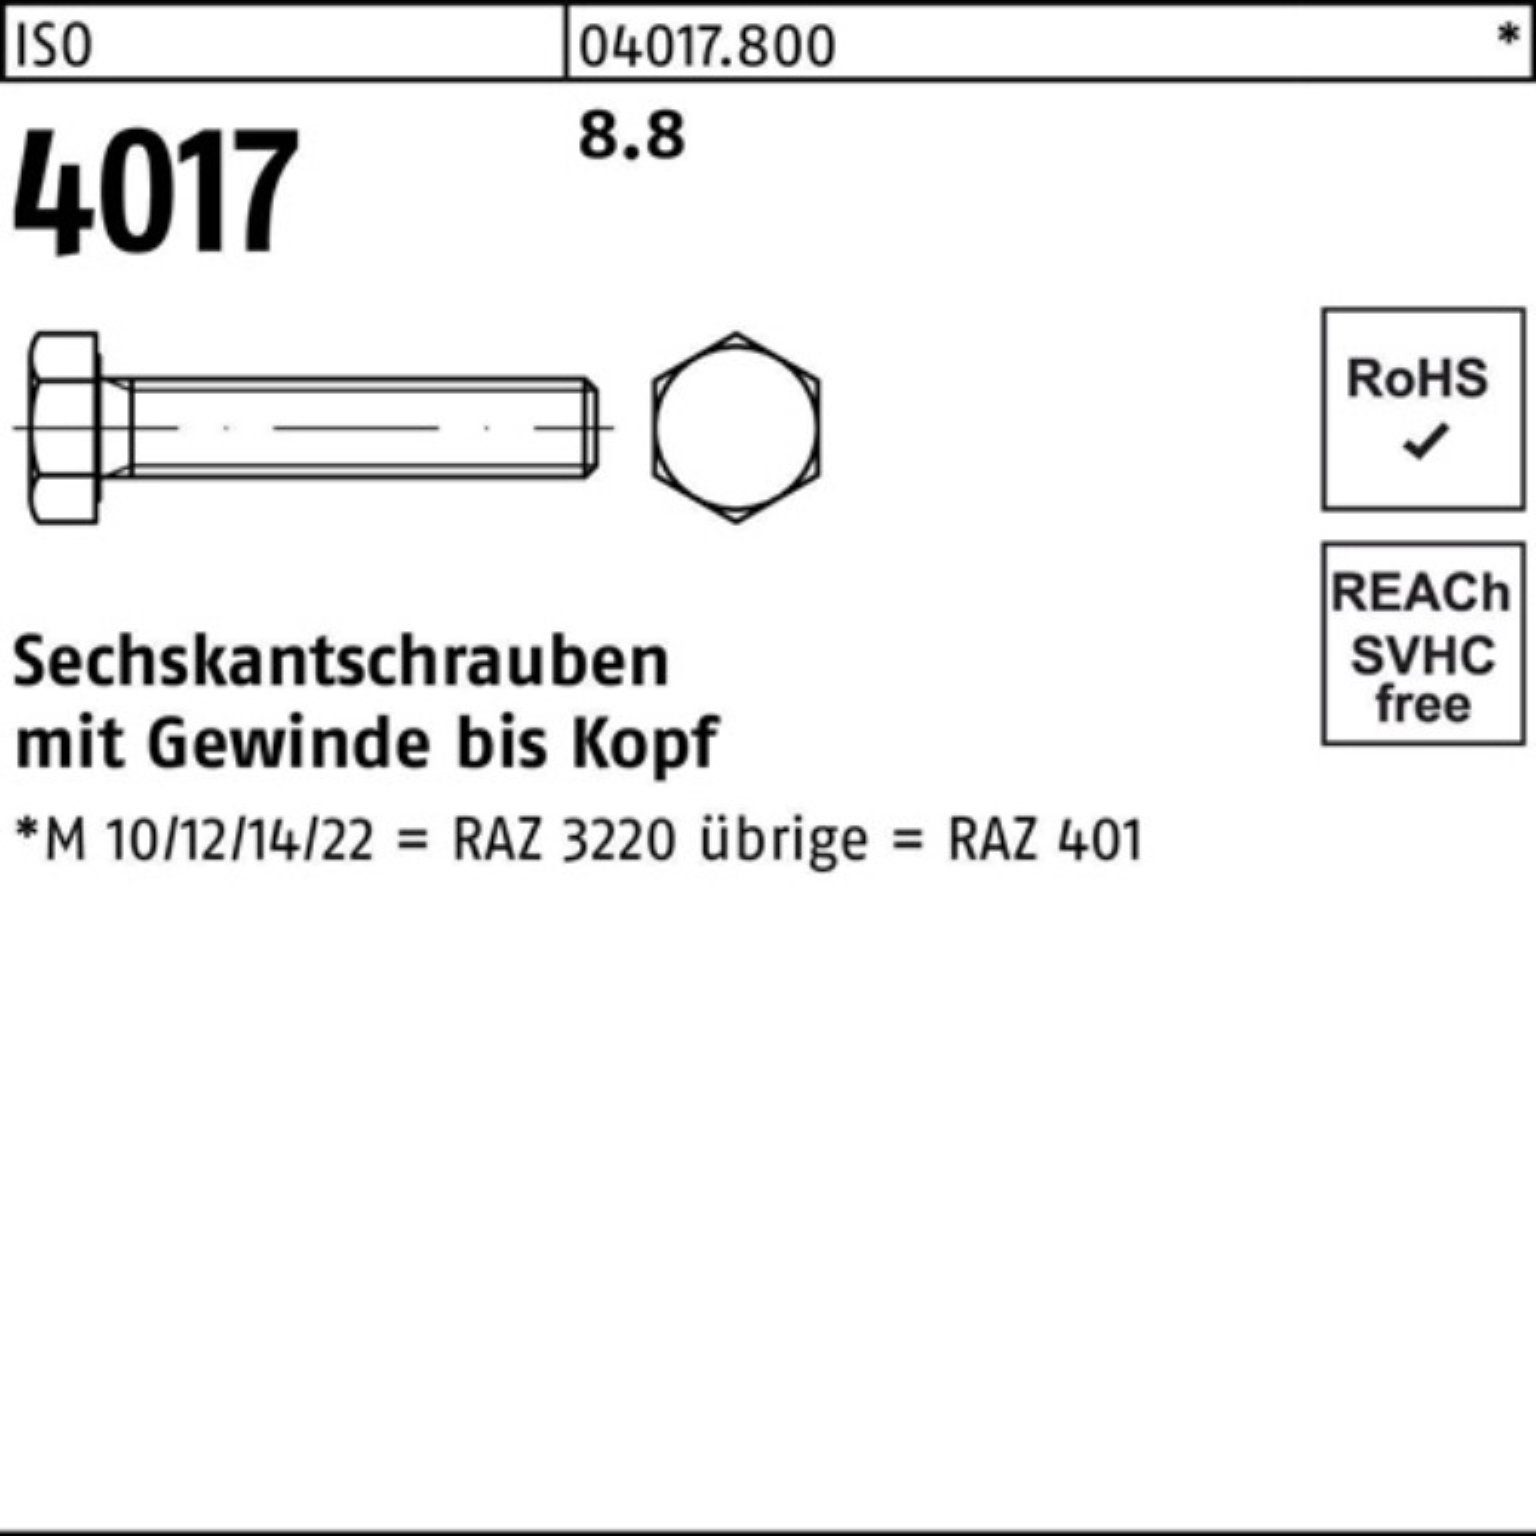 ISO 50 Sechskantschraube Bufab 8.8 100 ISO 4017 Pack Sechskantschraube Stück 40 M14x VG 100er